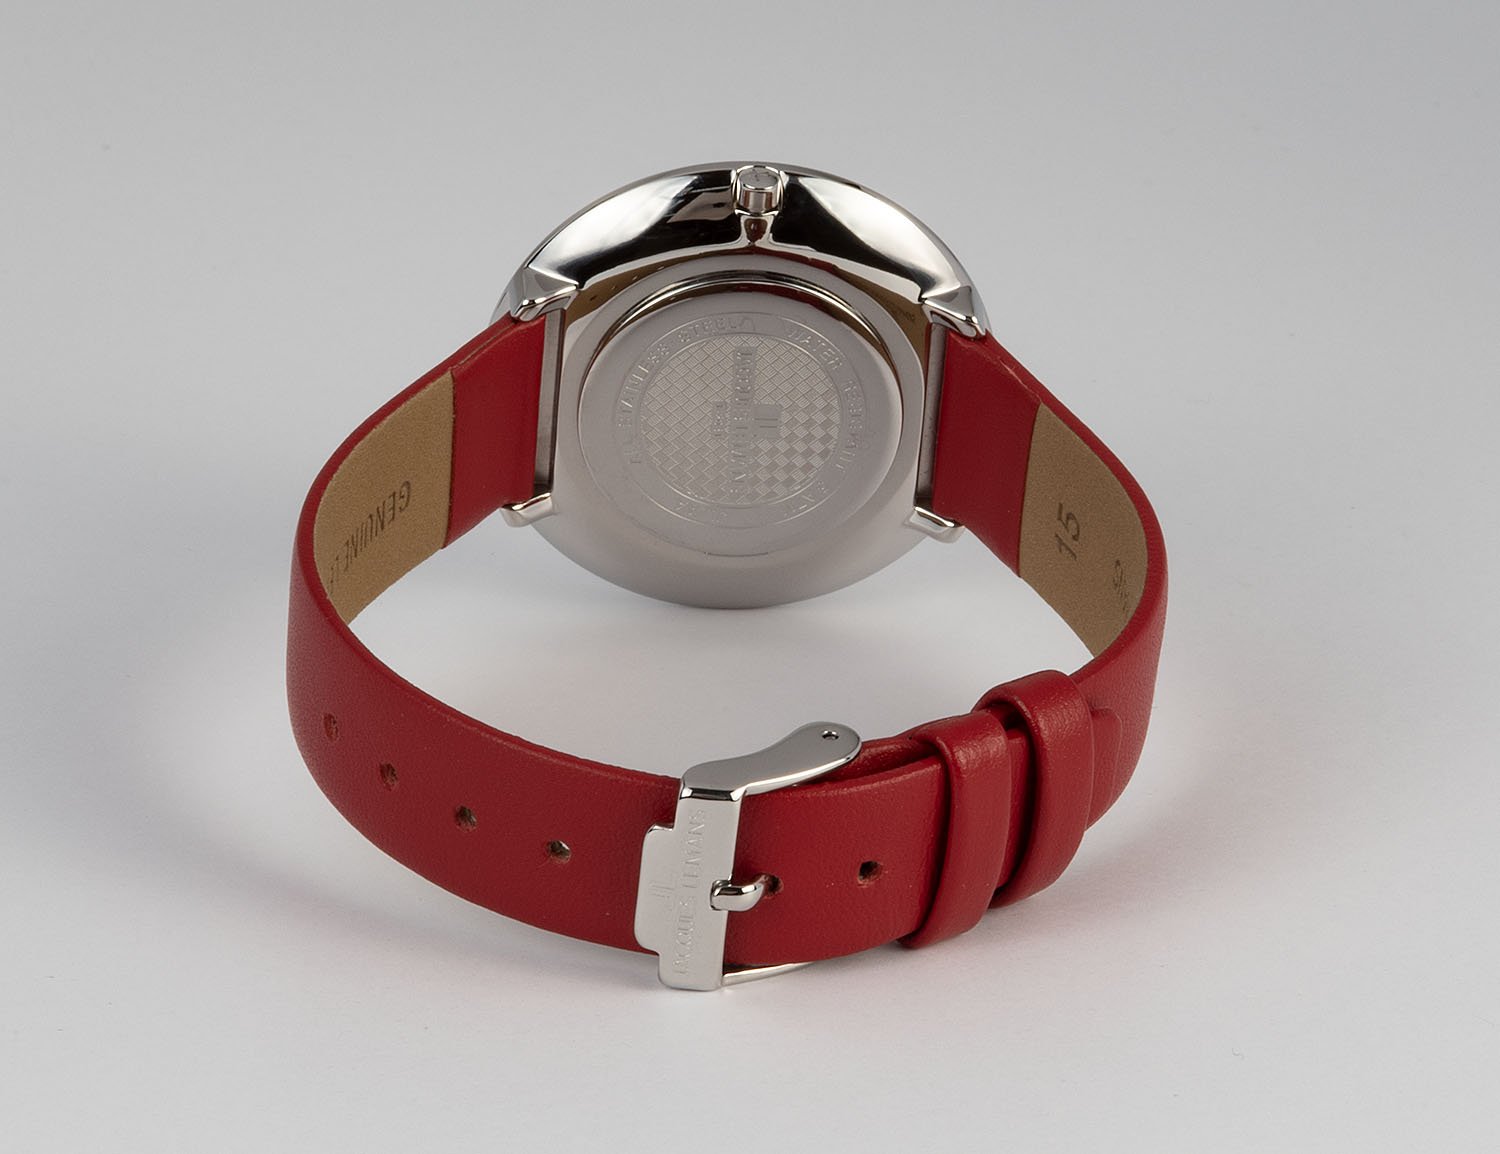 1-2031D, наручные часы Jacques Lemans